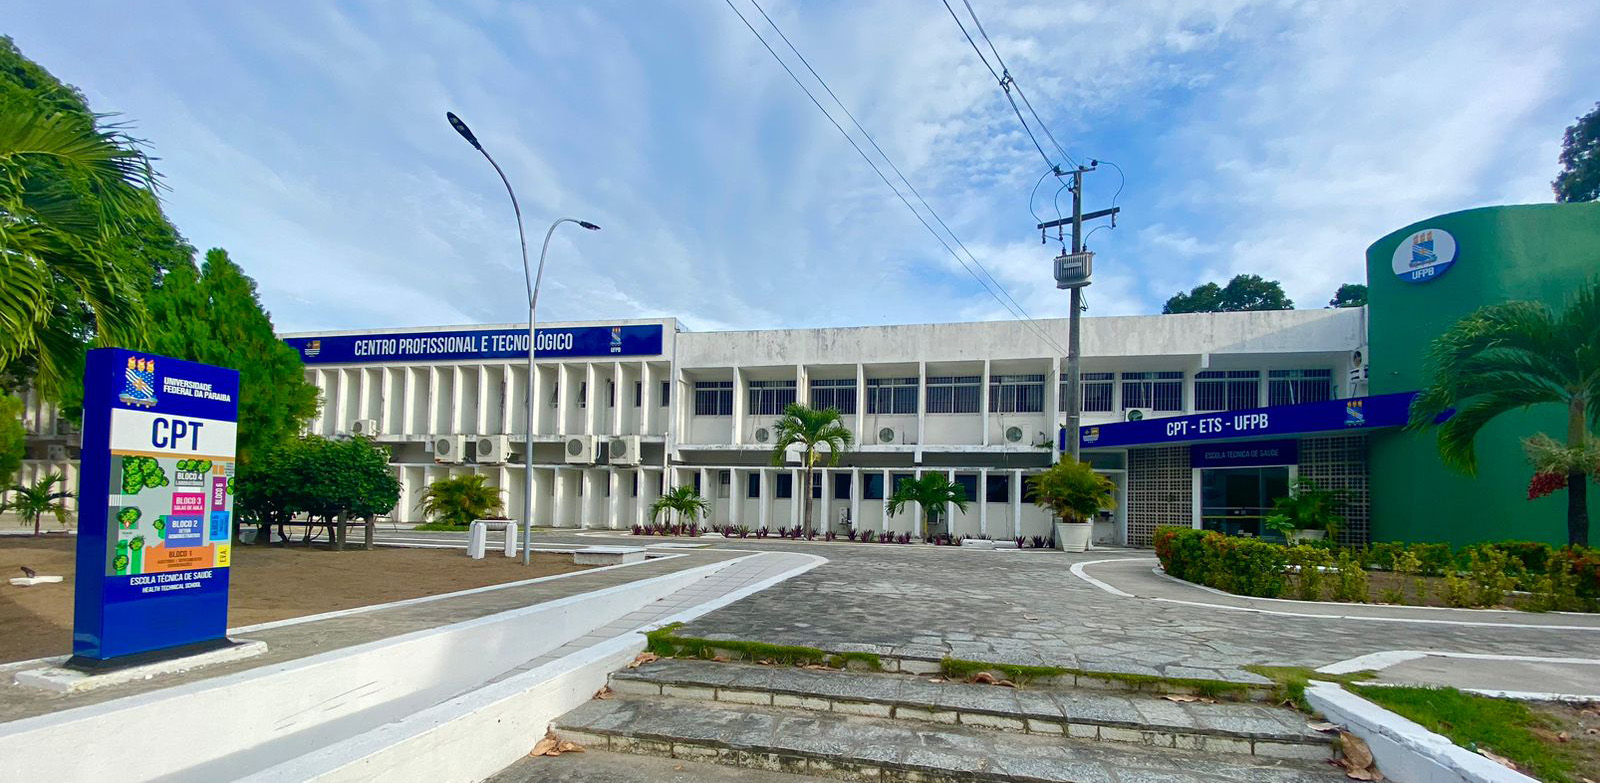 Centro Profissional e Tecnológico - Escola Técnica de Saúde da UFPB